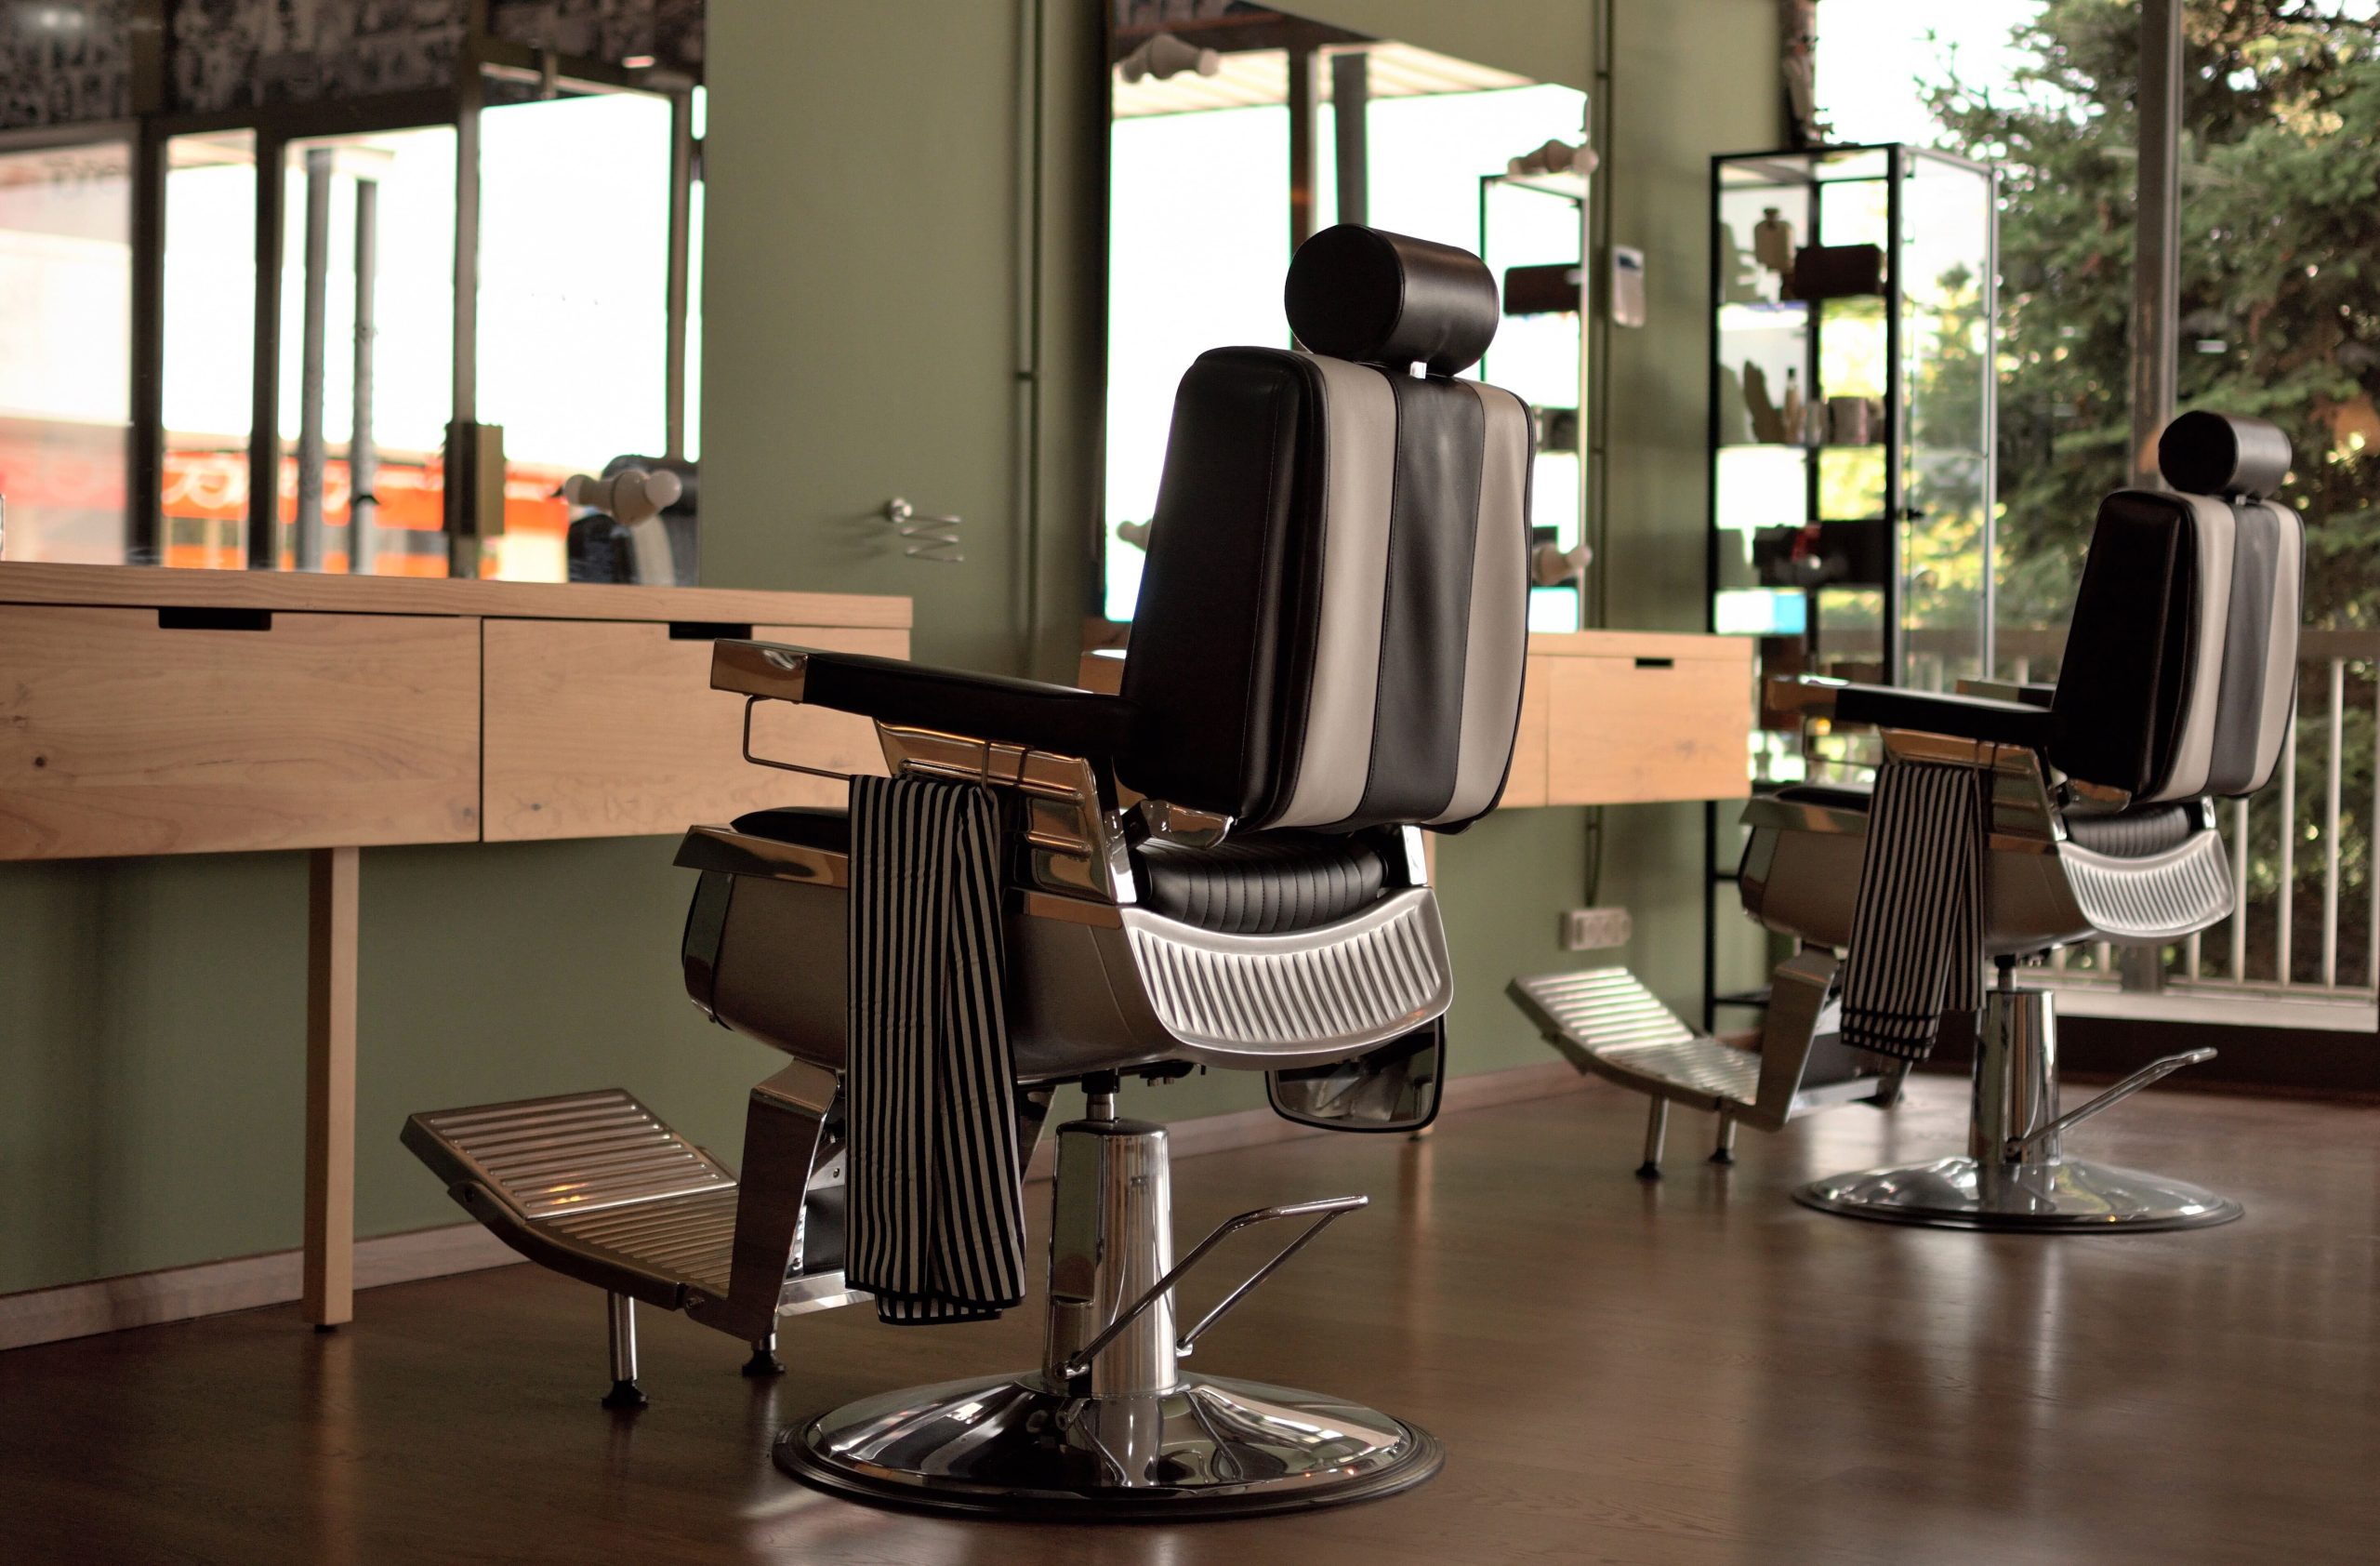 ouvrir un salon de coiffure sans bp